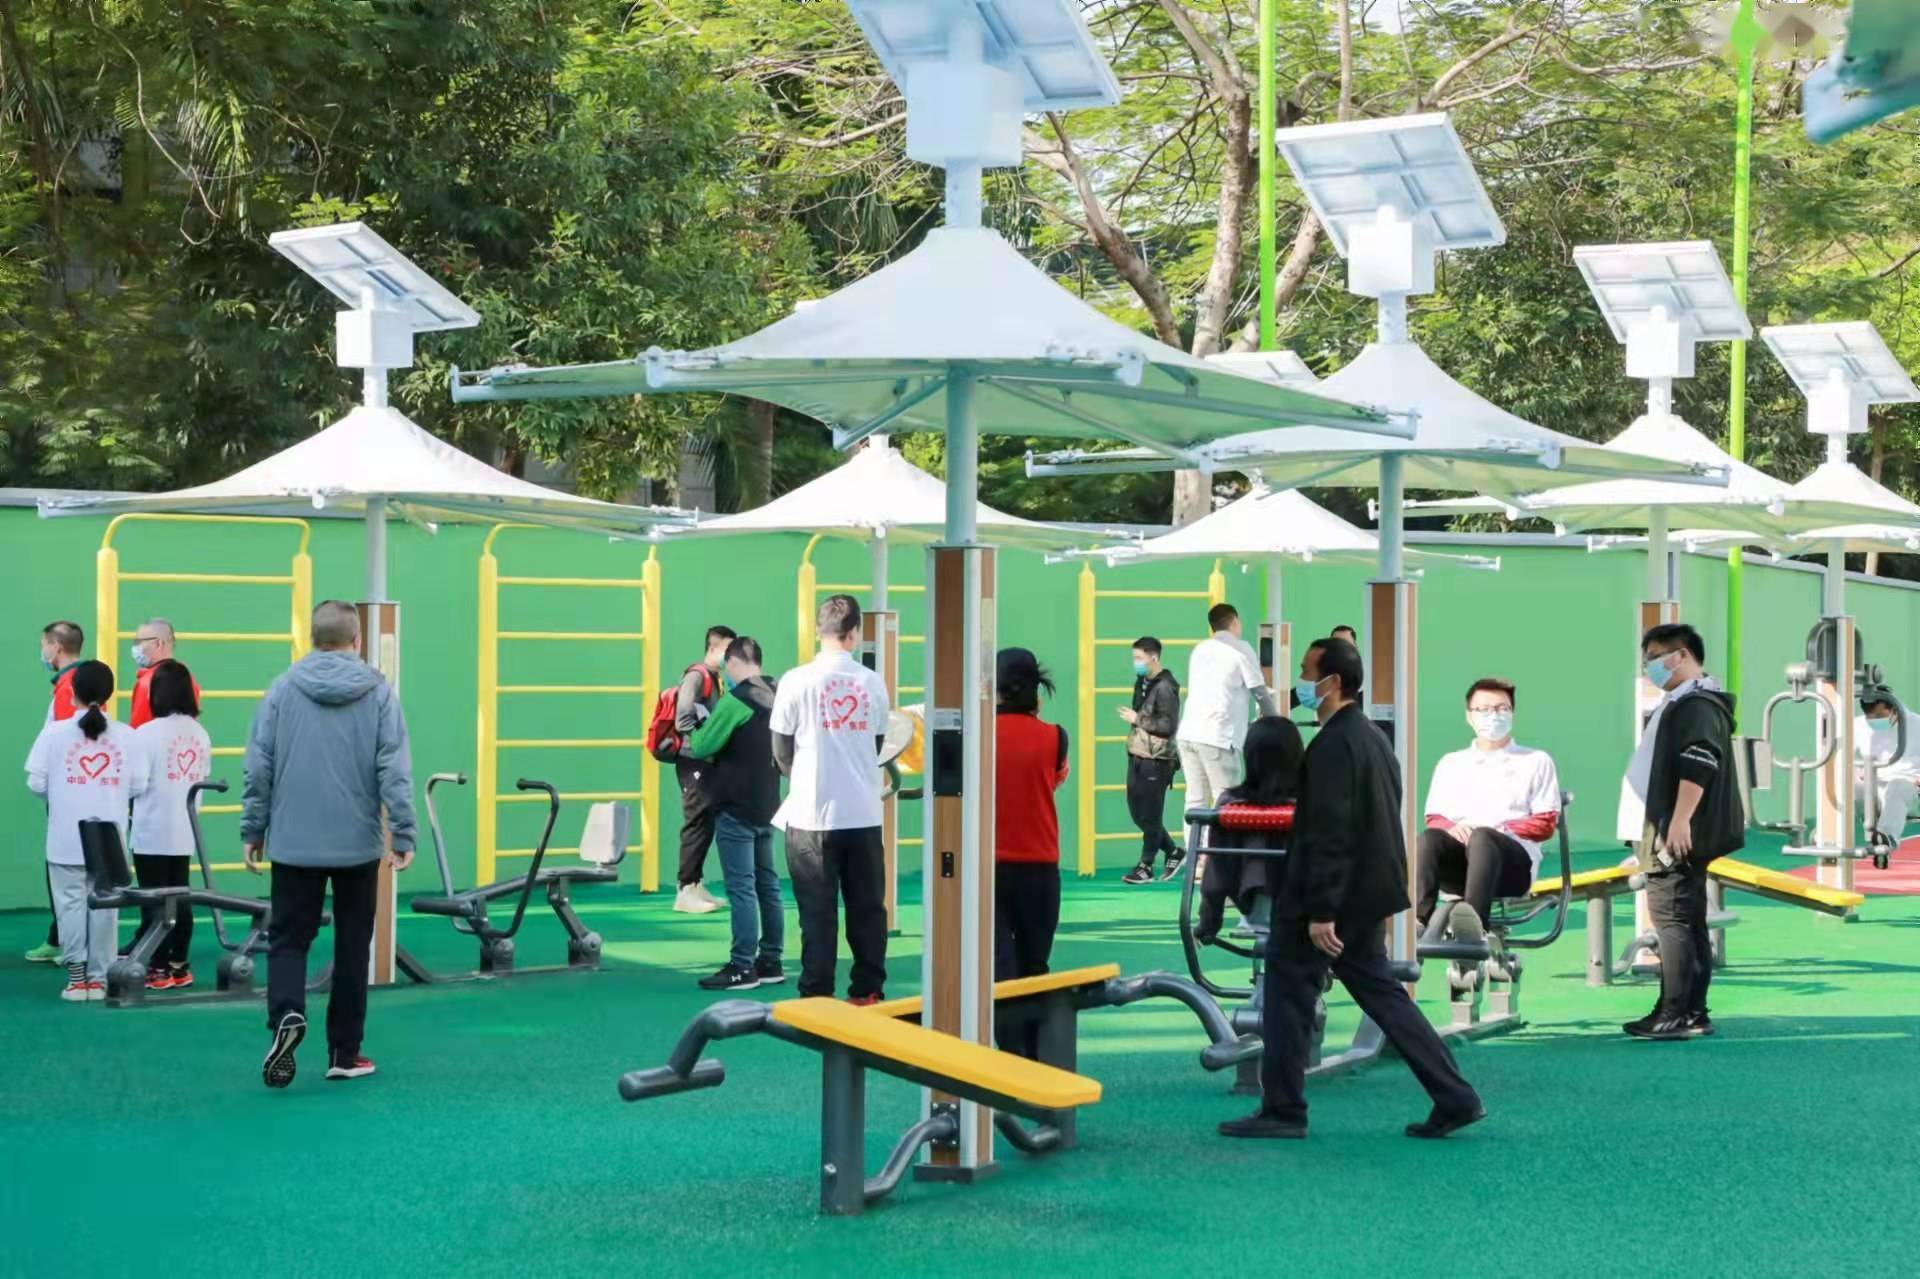 松江早就有这种1lol外围元就可以锻炼一整天的市民健身房啦